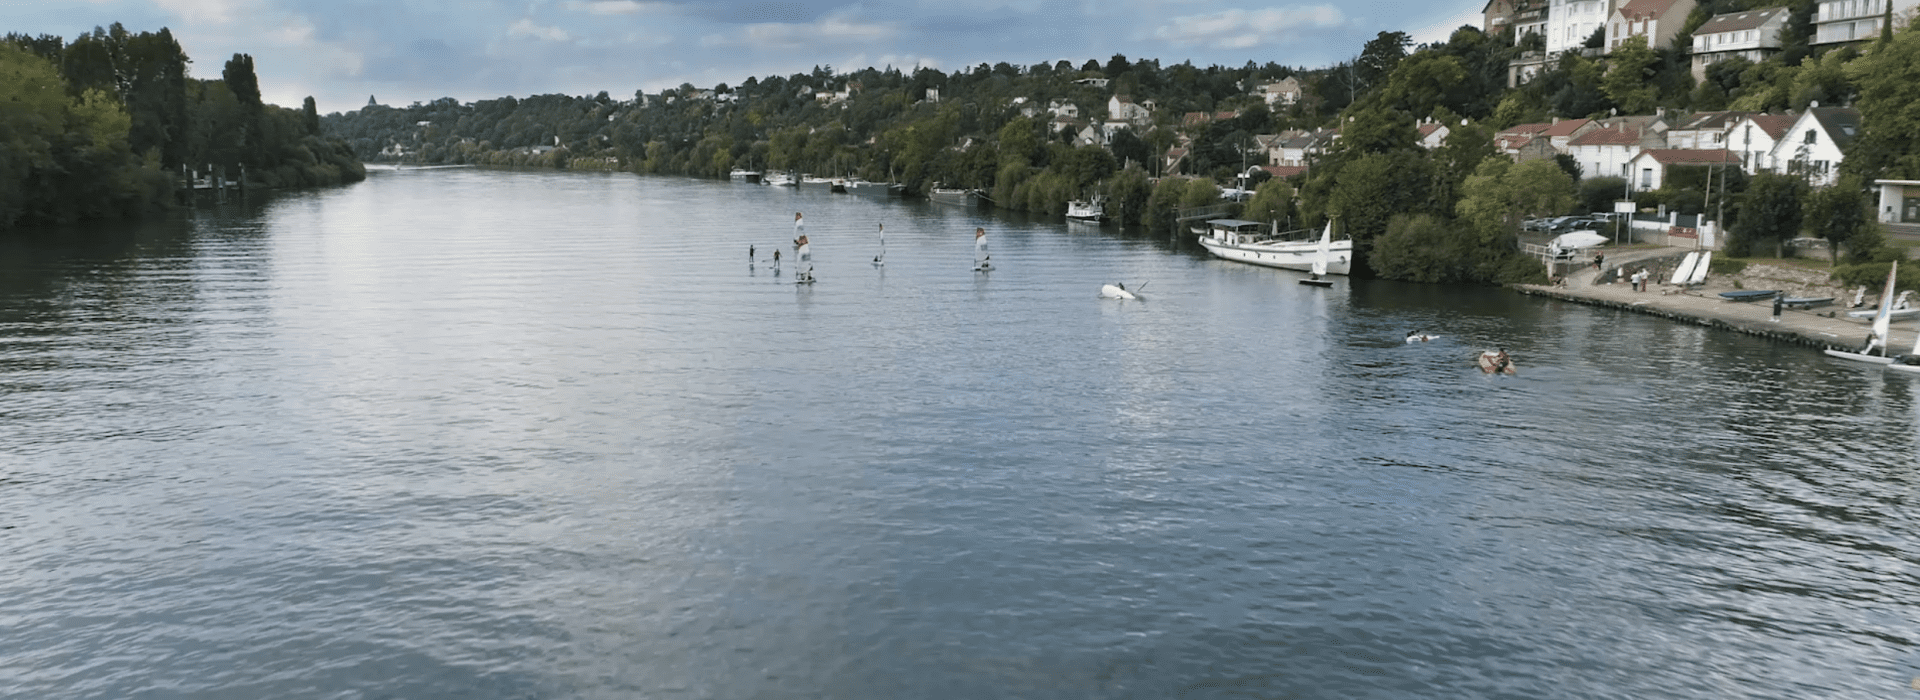 La Seine vue de La Frette-sur-Seine © Ville de La Frette-sur-Seine